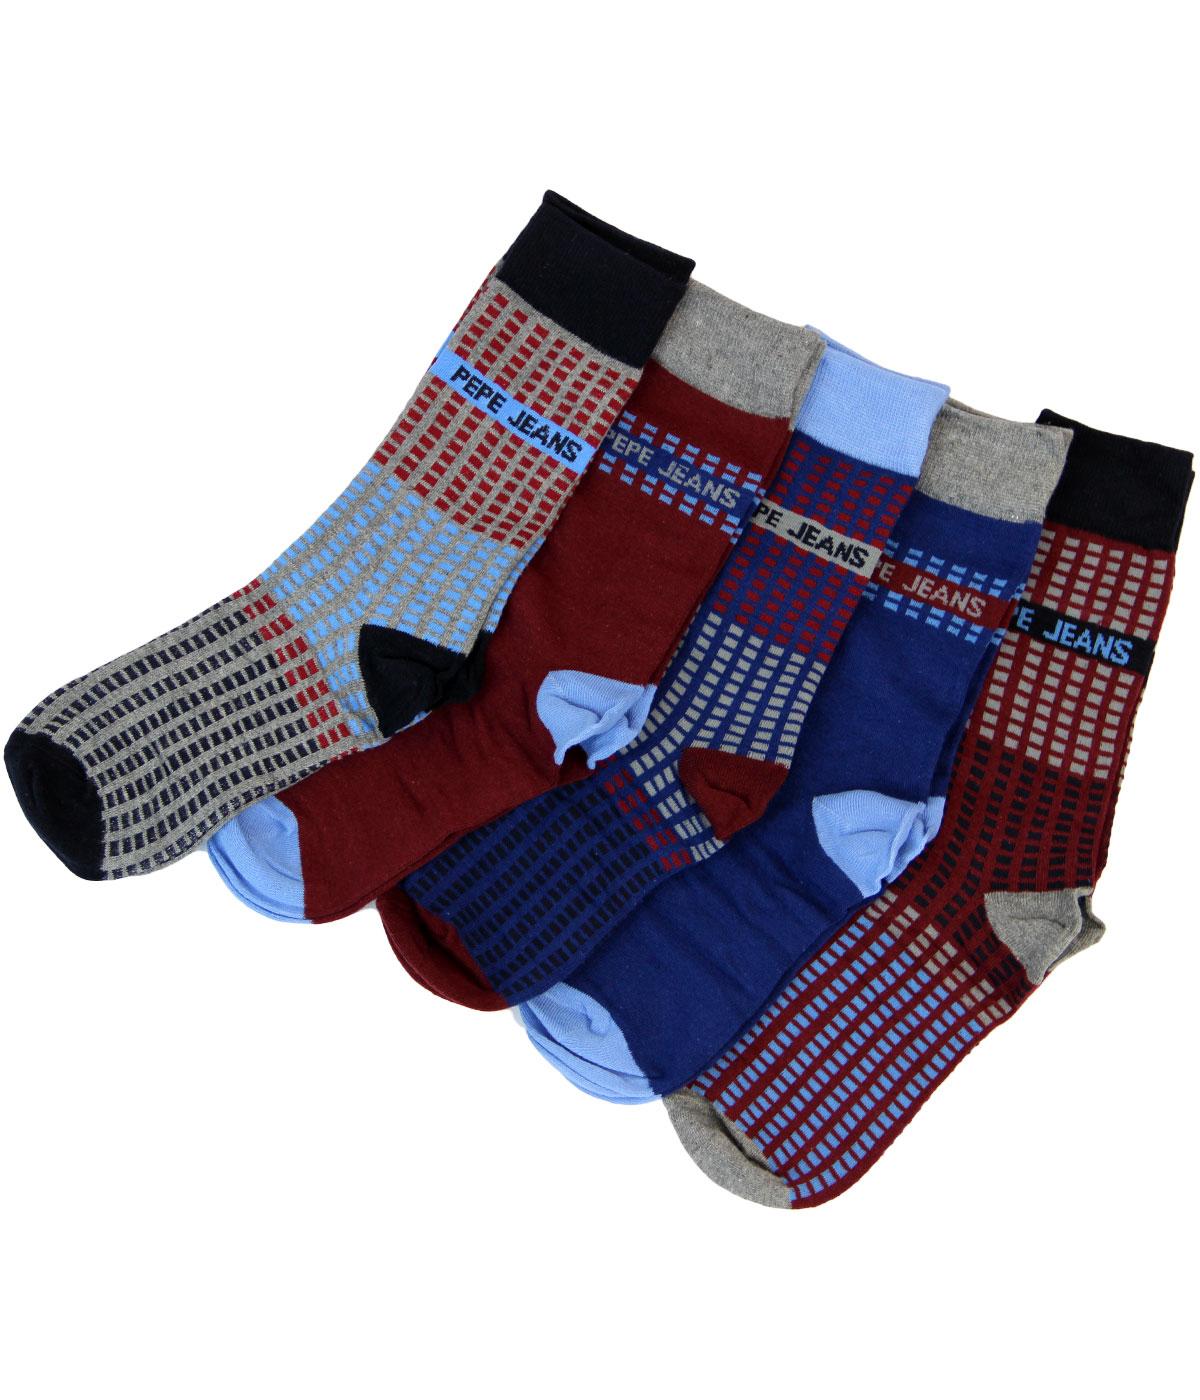 Romford PEPE JEANS Retro 5 Pack Socks Gift Set